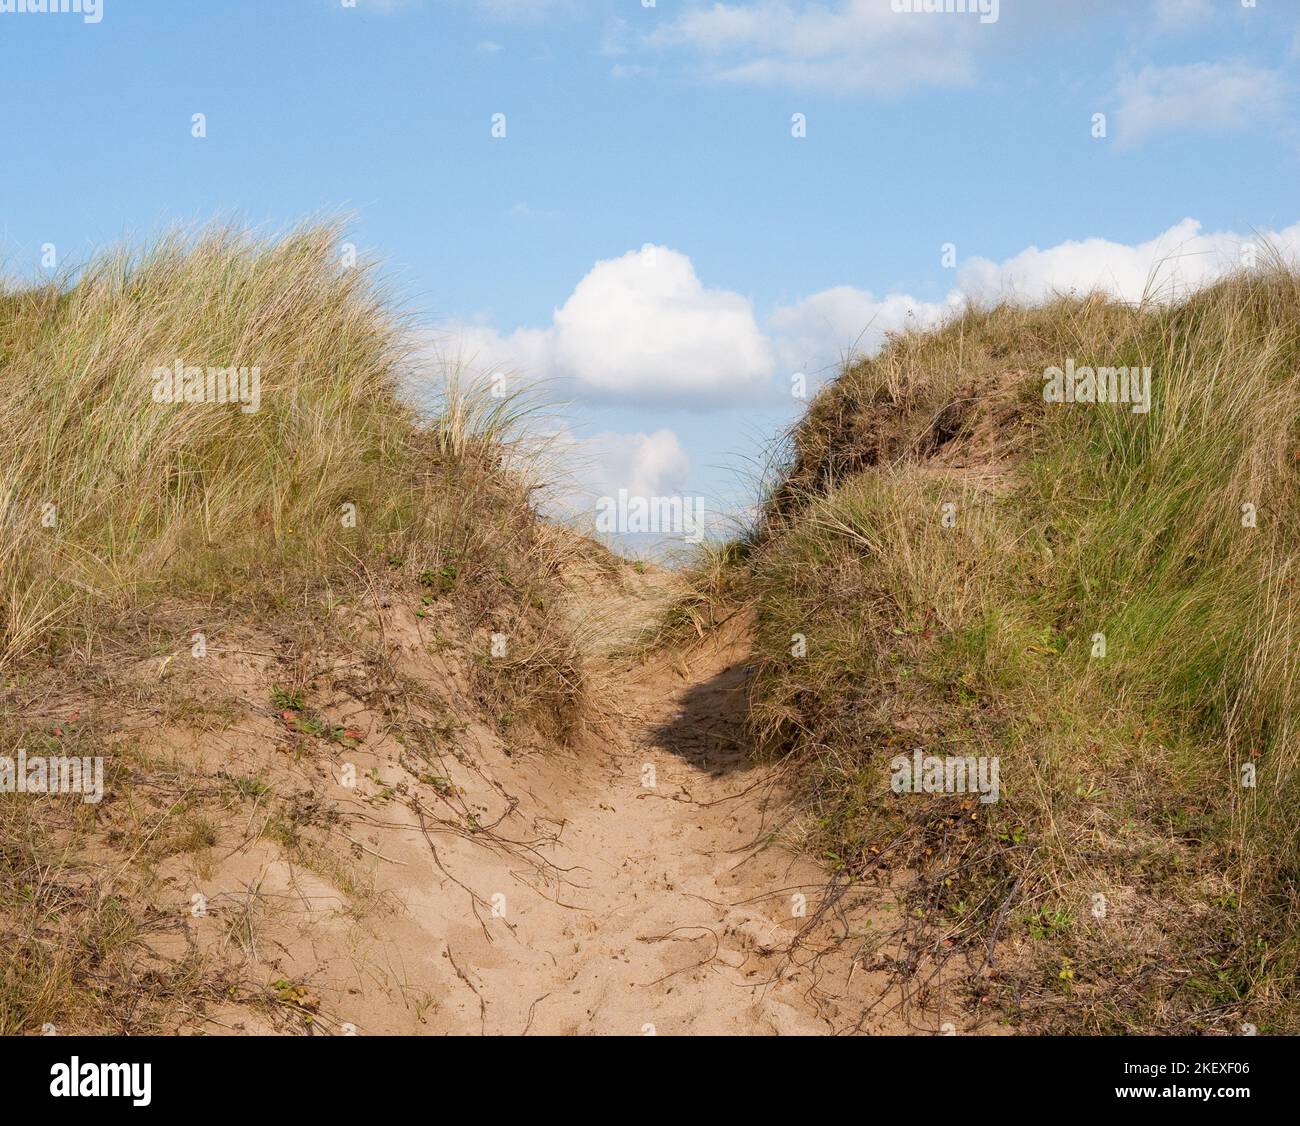 Sandweg durch Sanddünen am Strand in der Nähe von Swansea. Gras wächst auf Sanddünen. Blauer Himmel mit weißen, flauschigen Wolken. Stockfoto